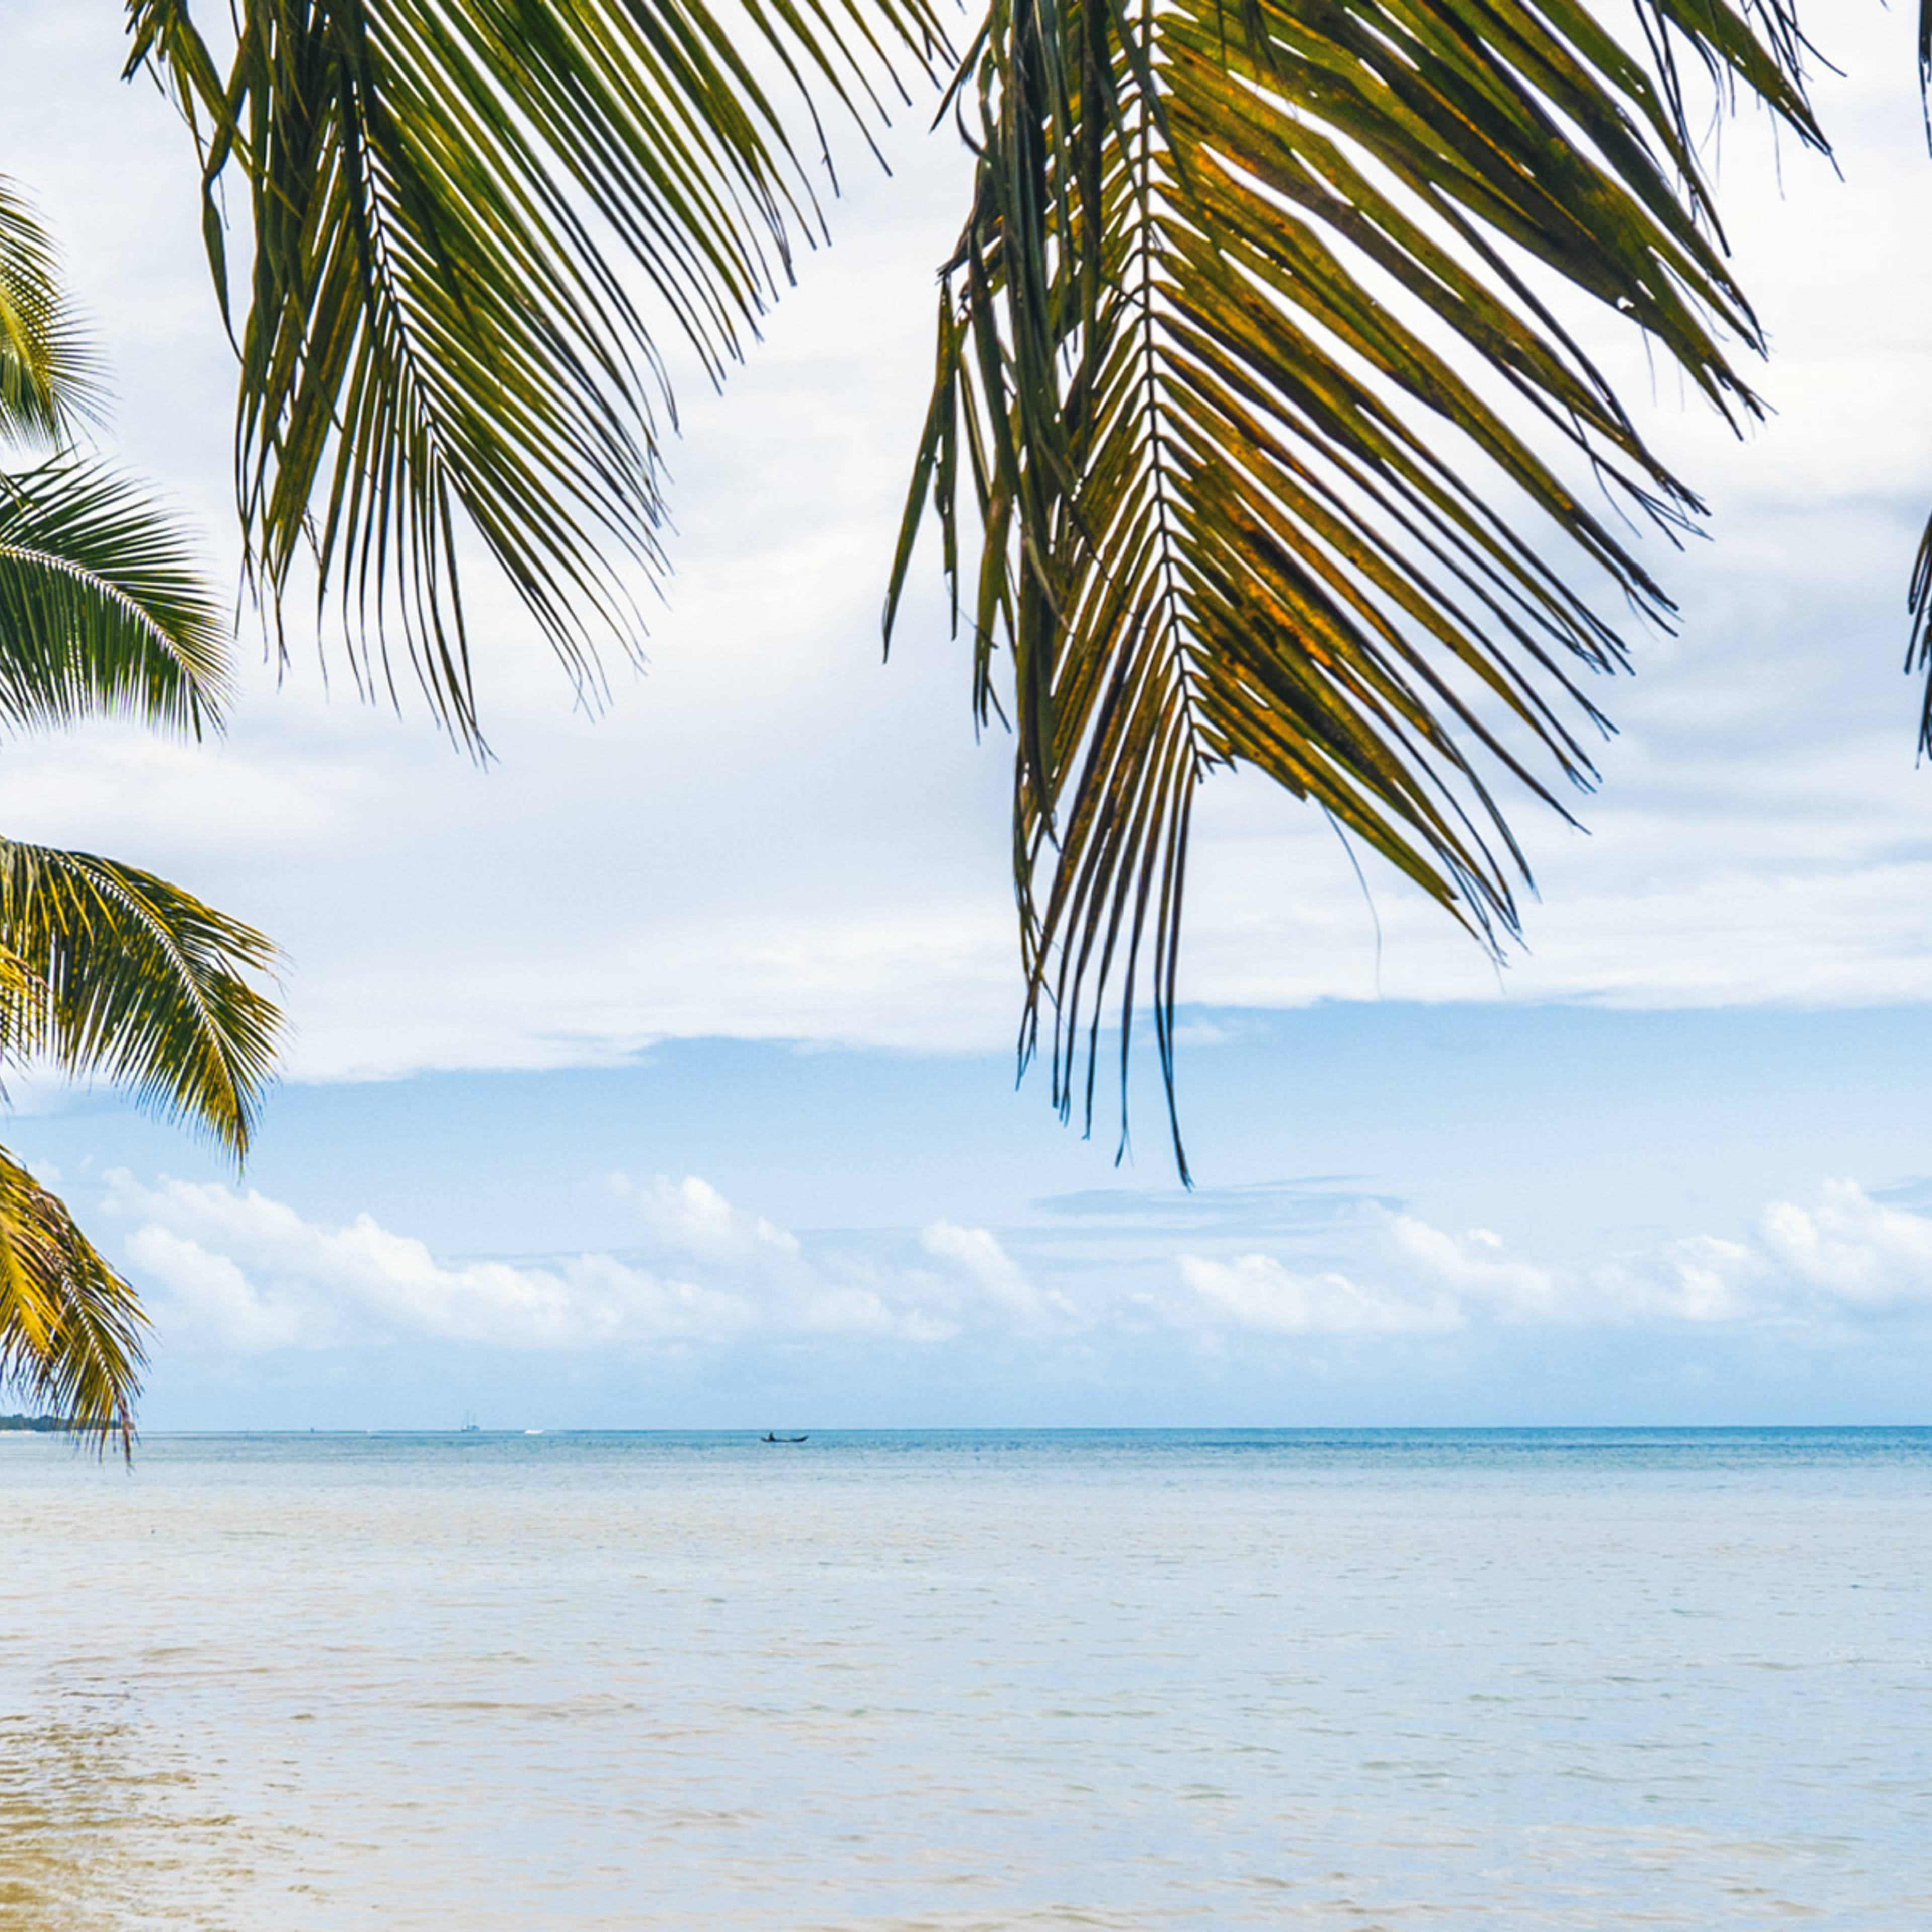 tropical island - sea, sky and palm trees